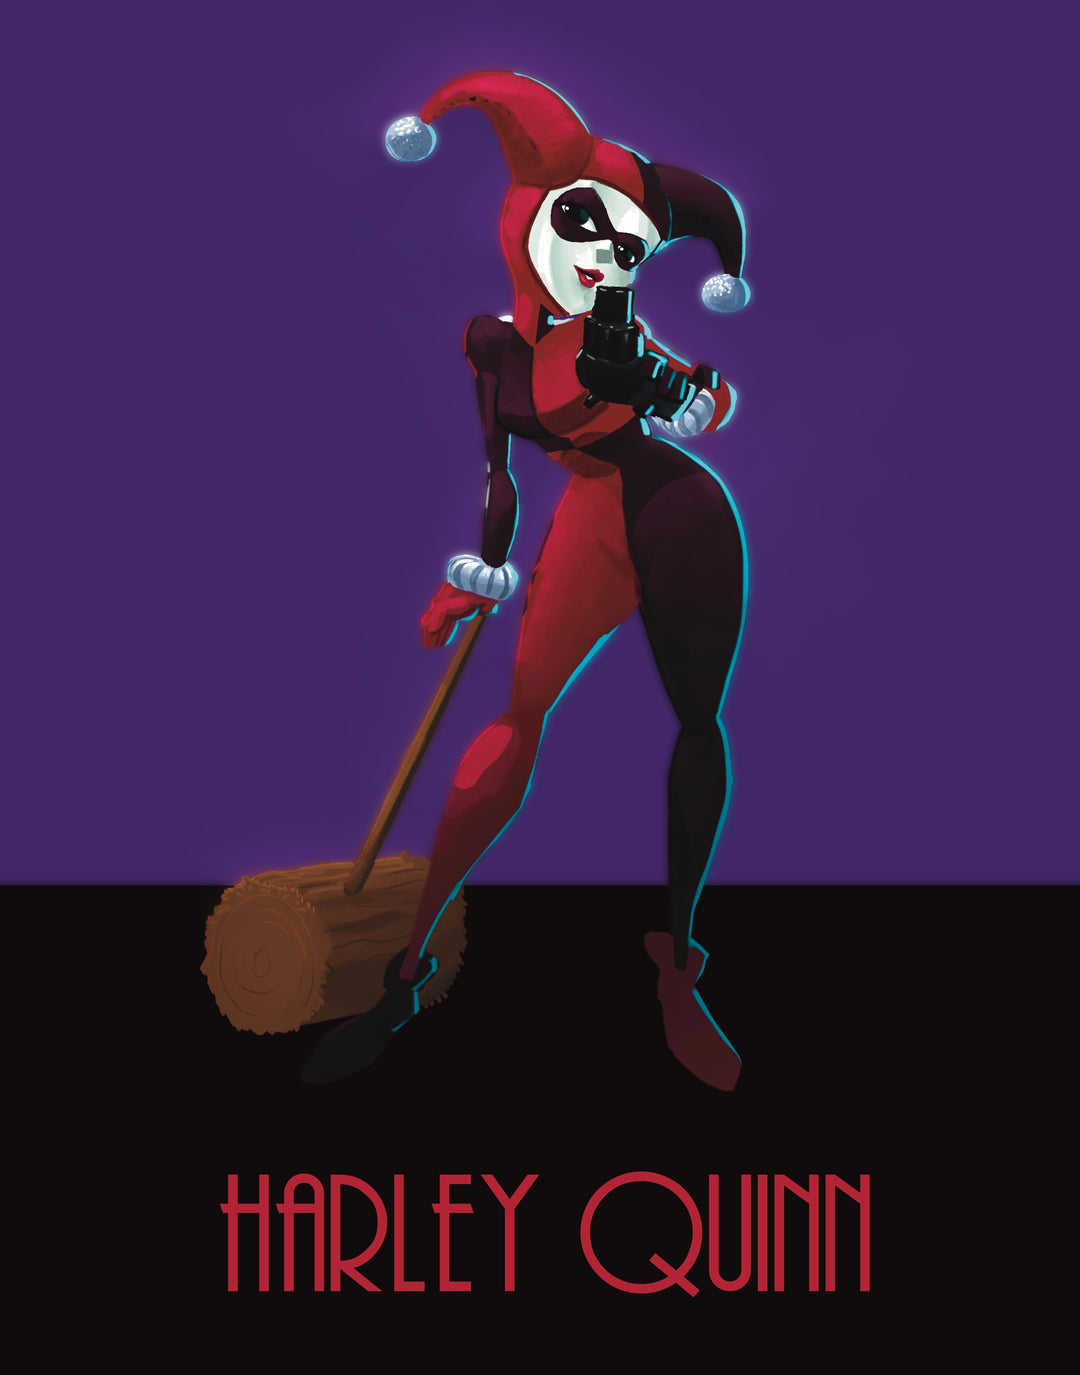 Batman: The Animated Series - Harley Quinn Premium Art Print - 11 x 14